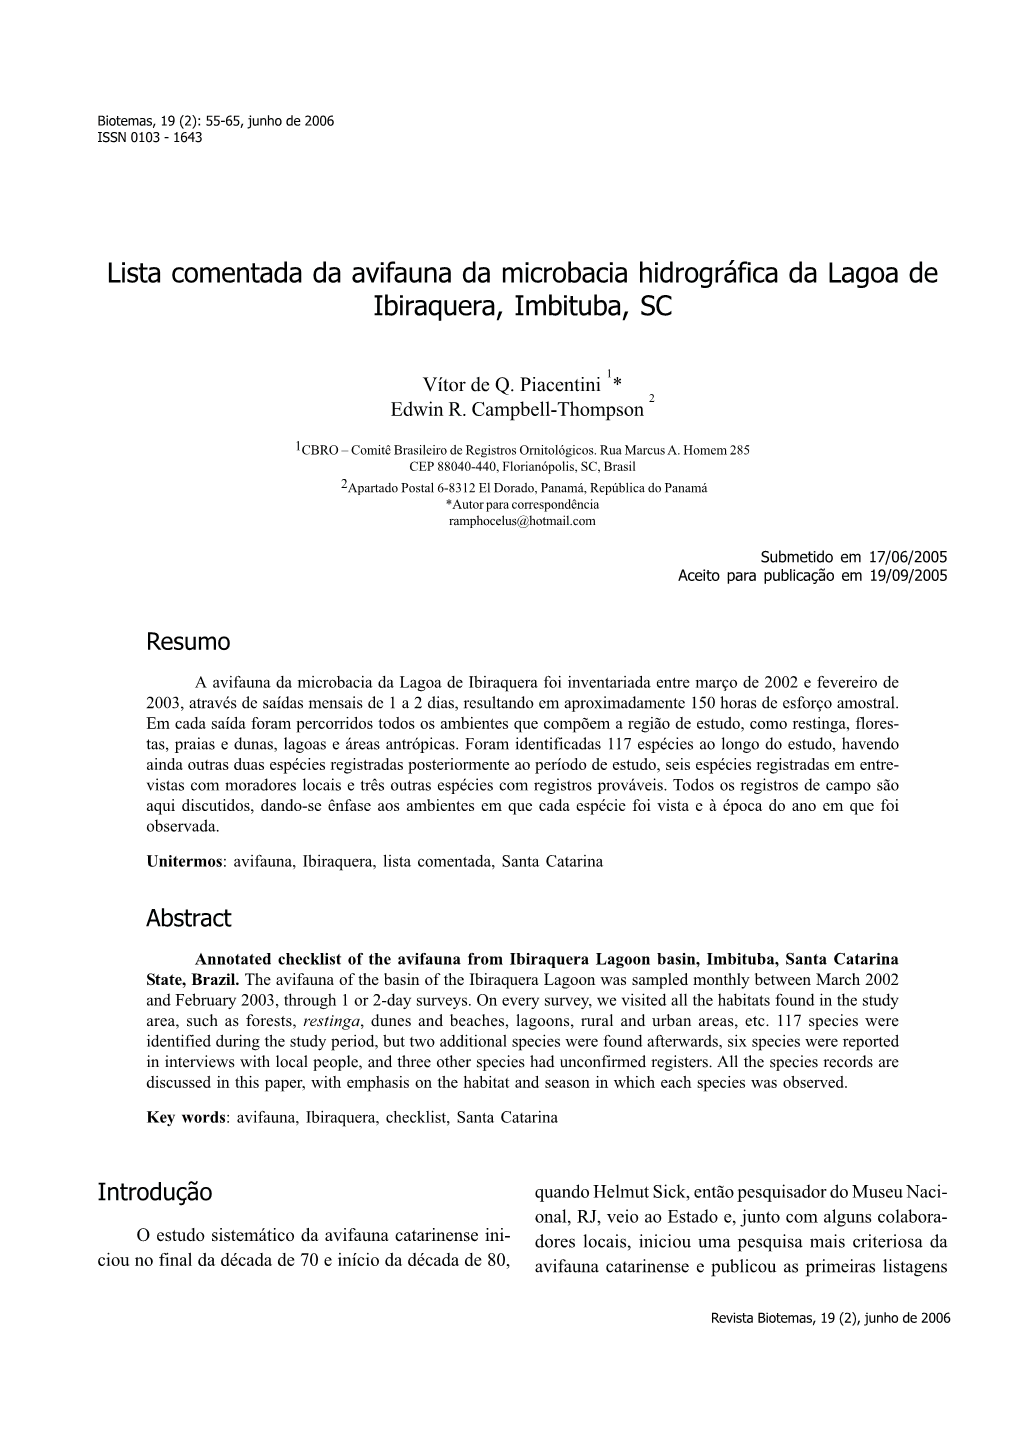 Lista Comentada Da Avifauna Da Microbacia Hidrográfica Da Lagoa De Ibiraquera, Imbituba, SC